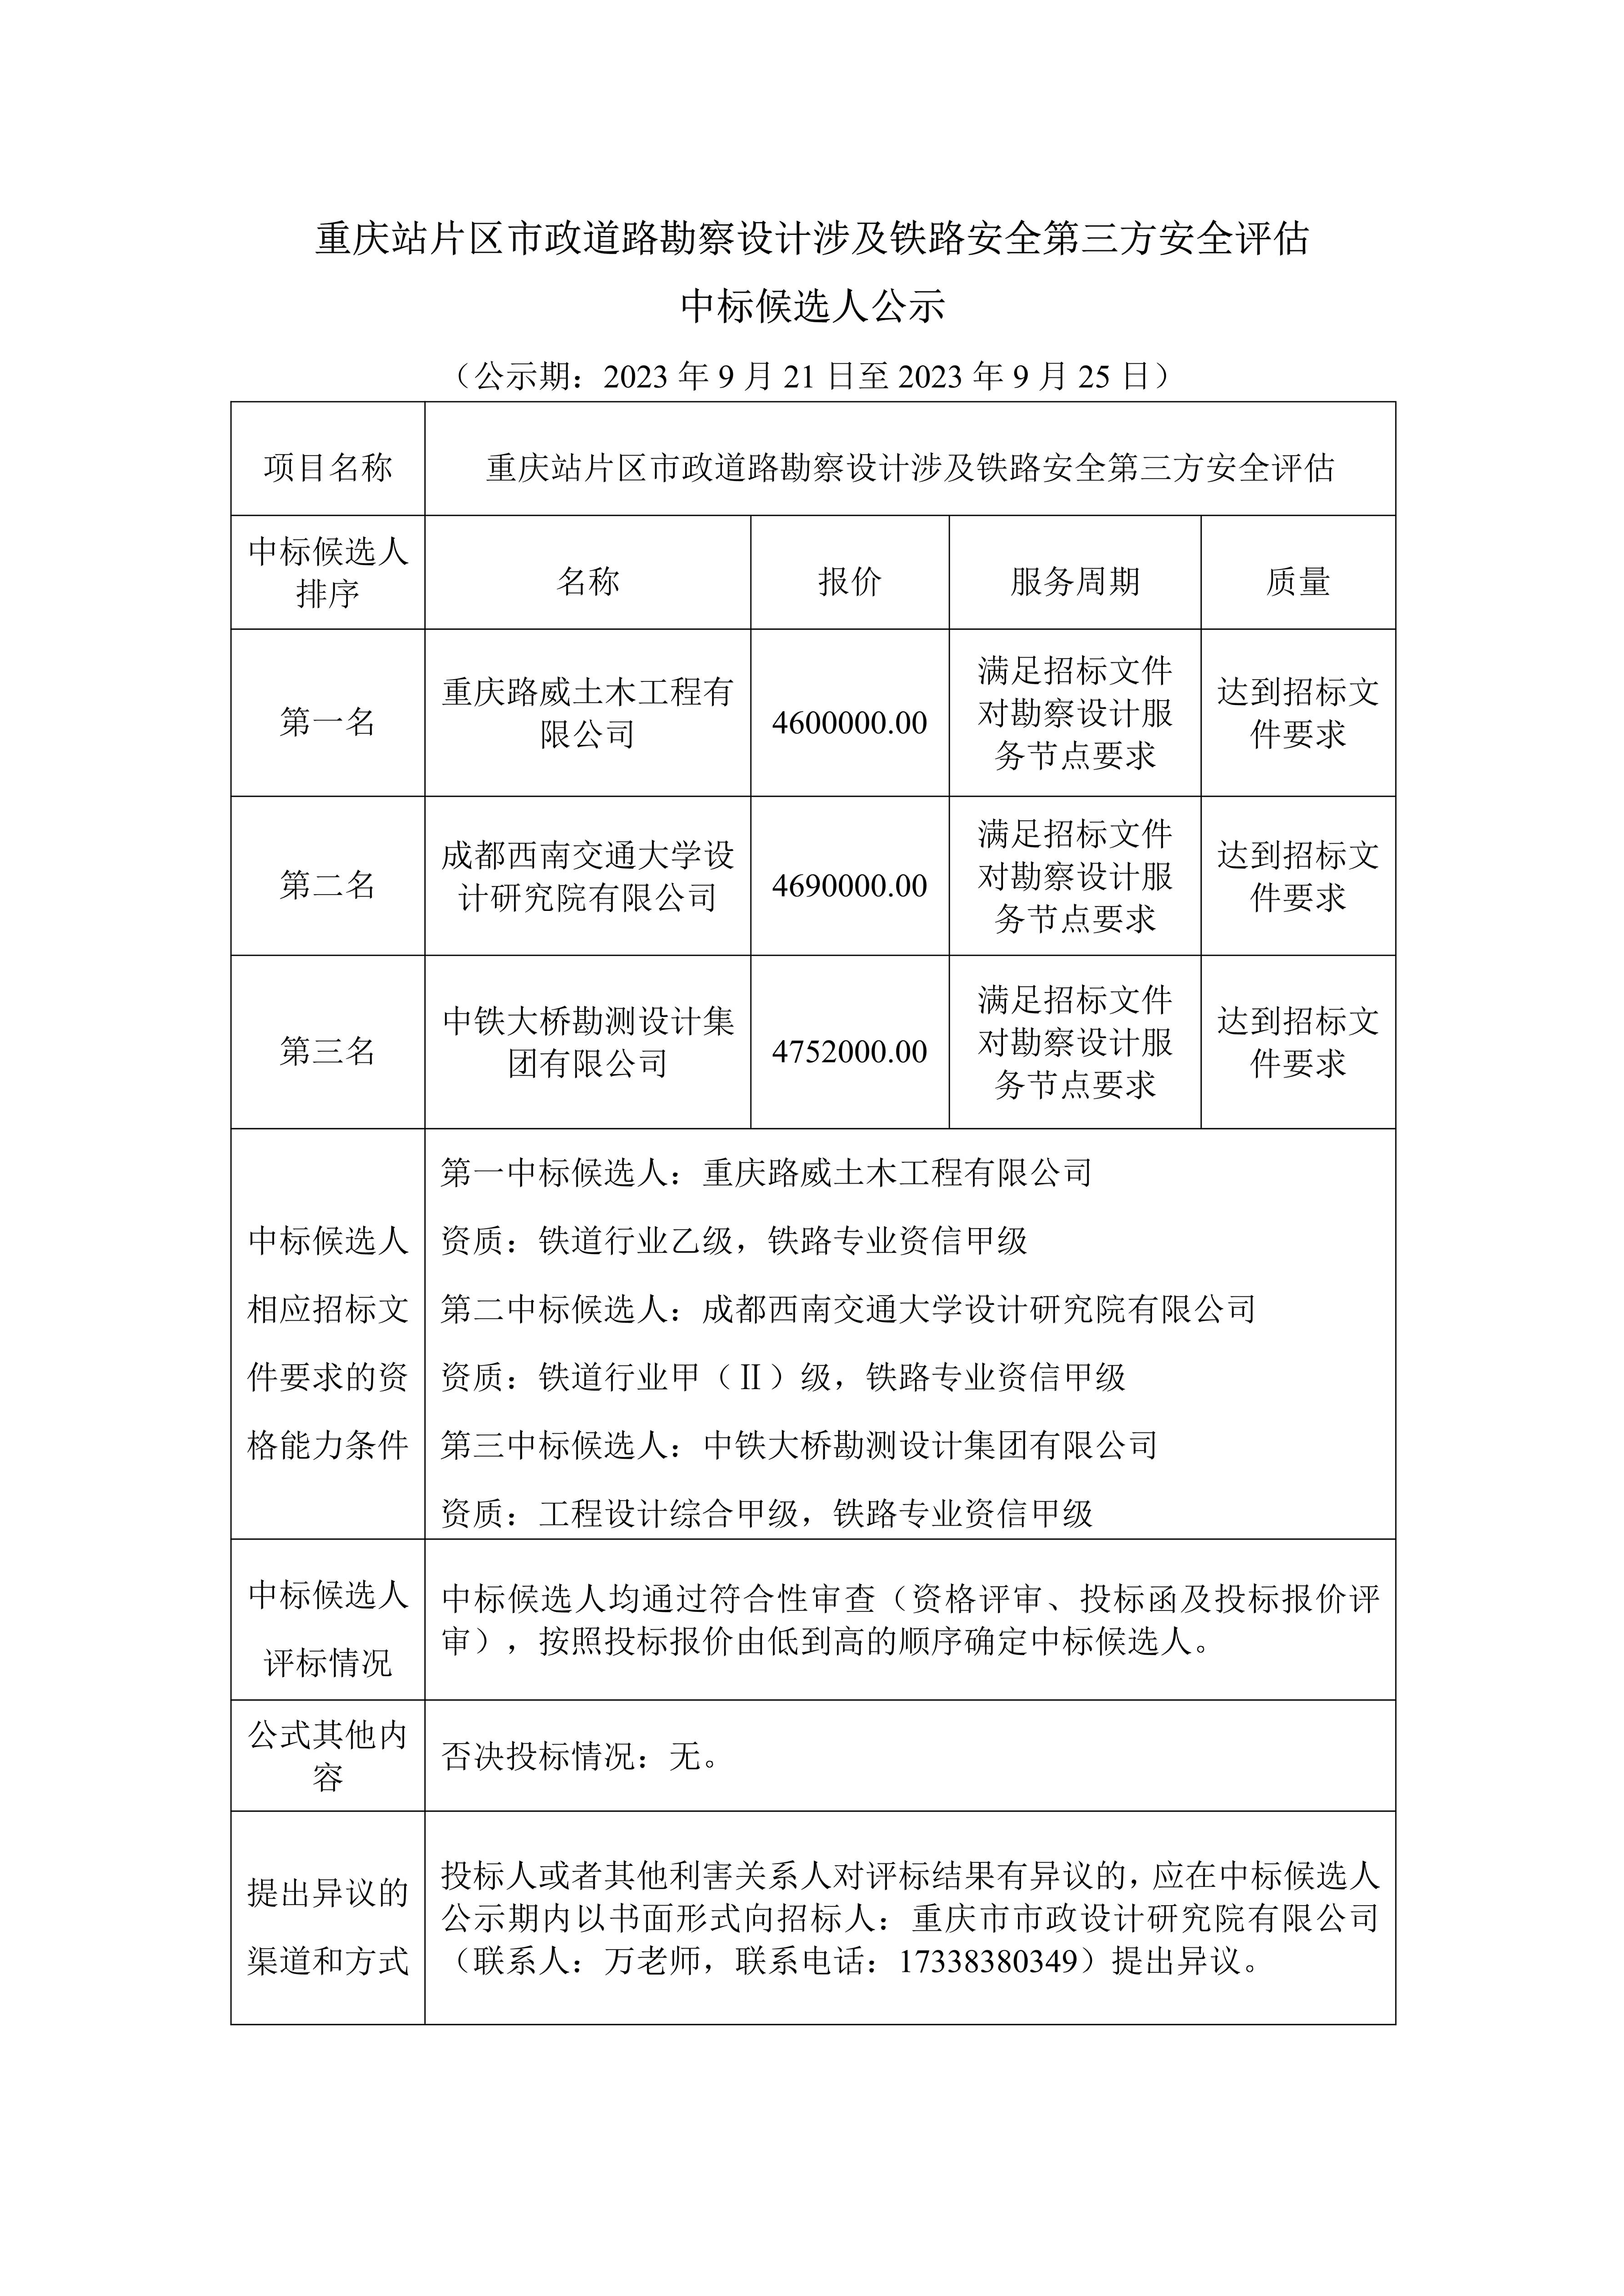 重庆站片区市政道路勘察设计涉及铁路安全第三方安全评估中标候选人公示_1.jpg